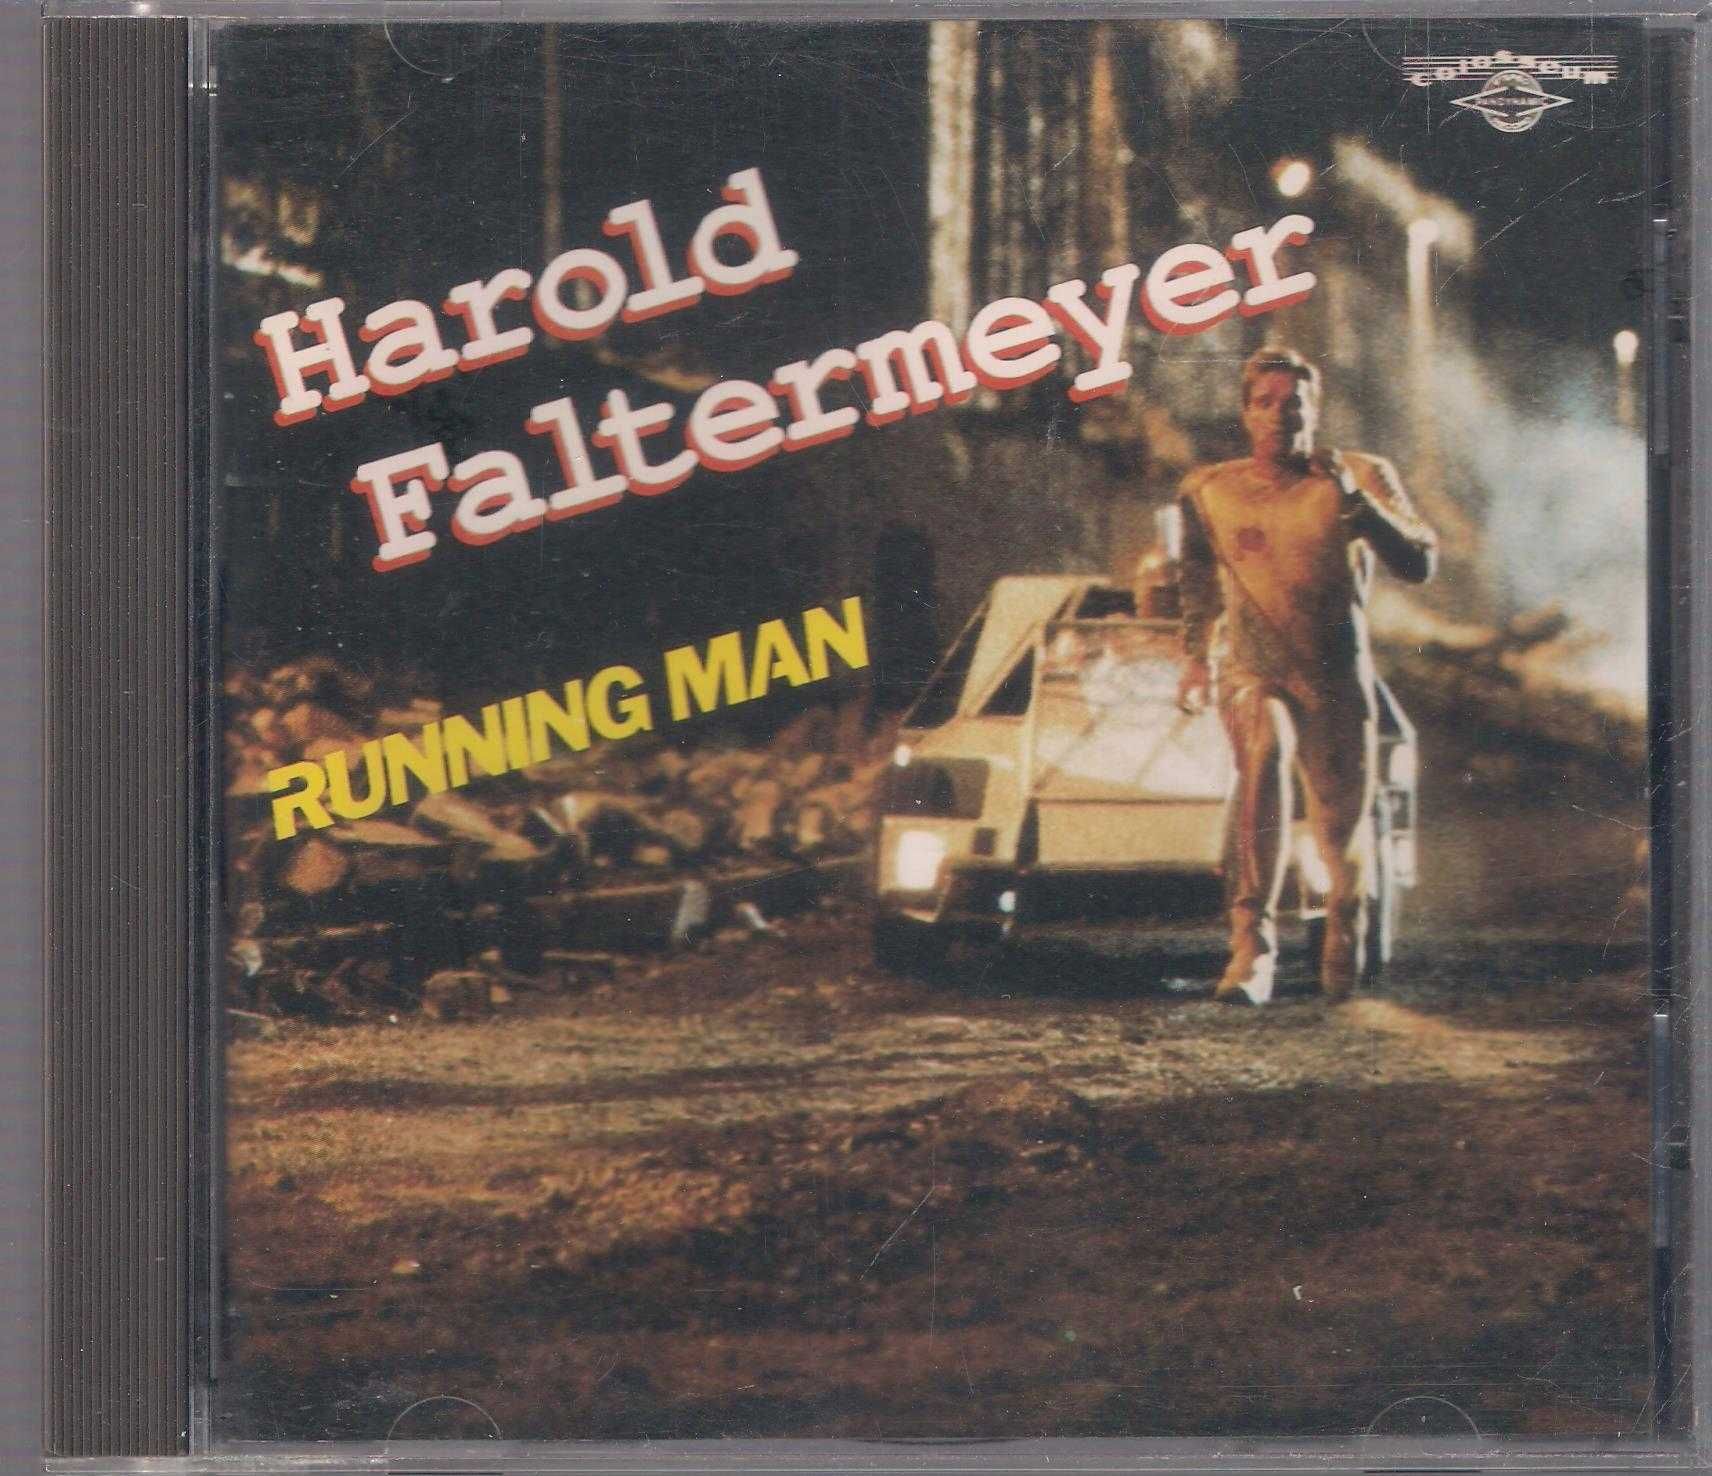 Harold Faltermeyer - Running Man CD Soundtrack OST